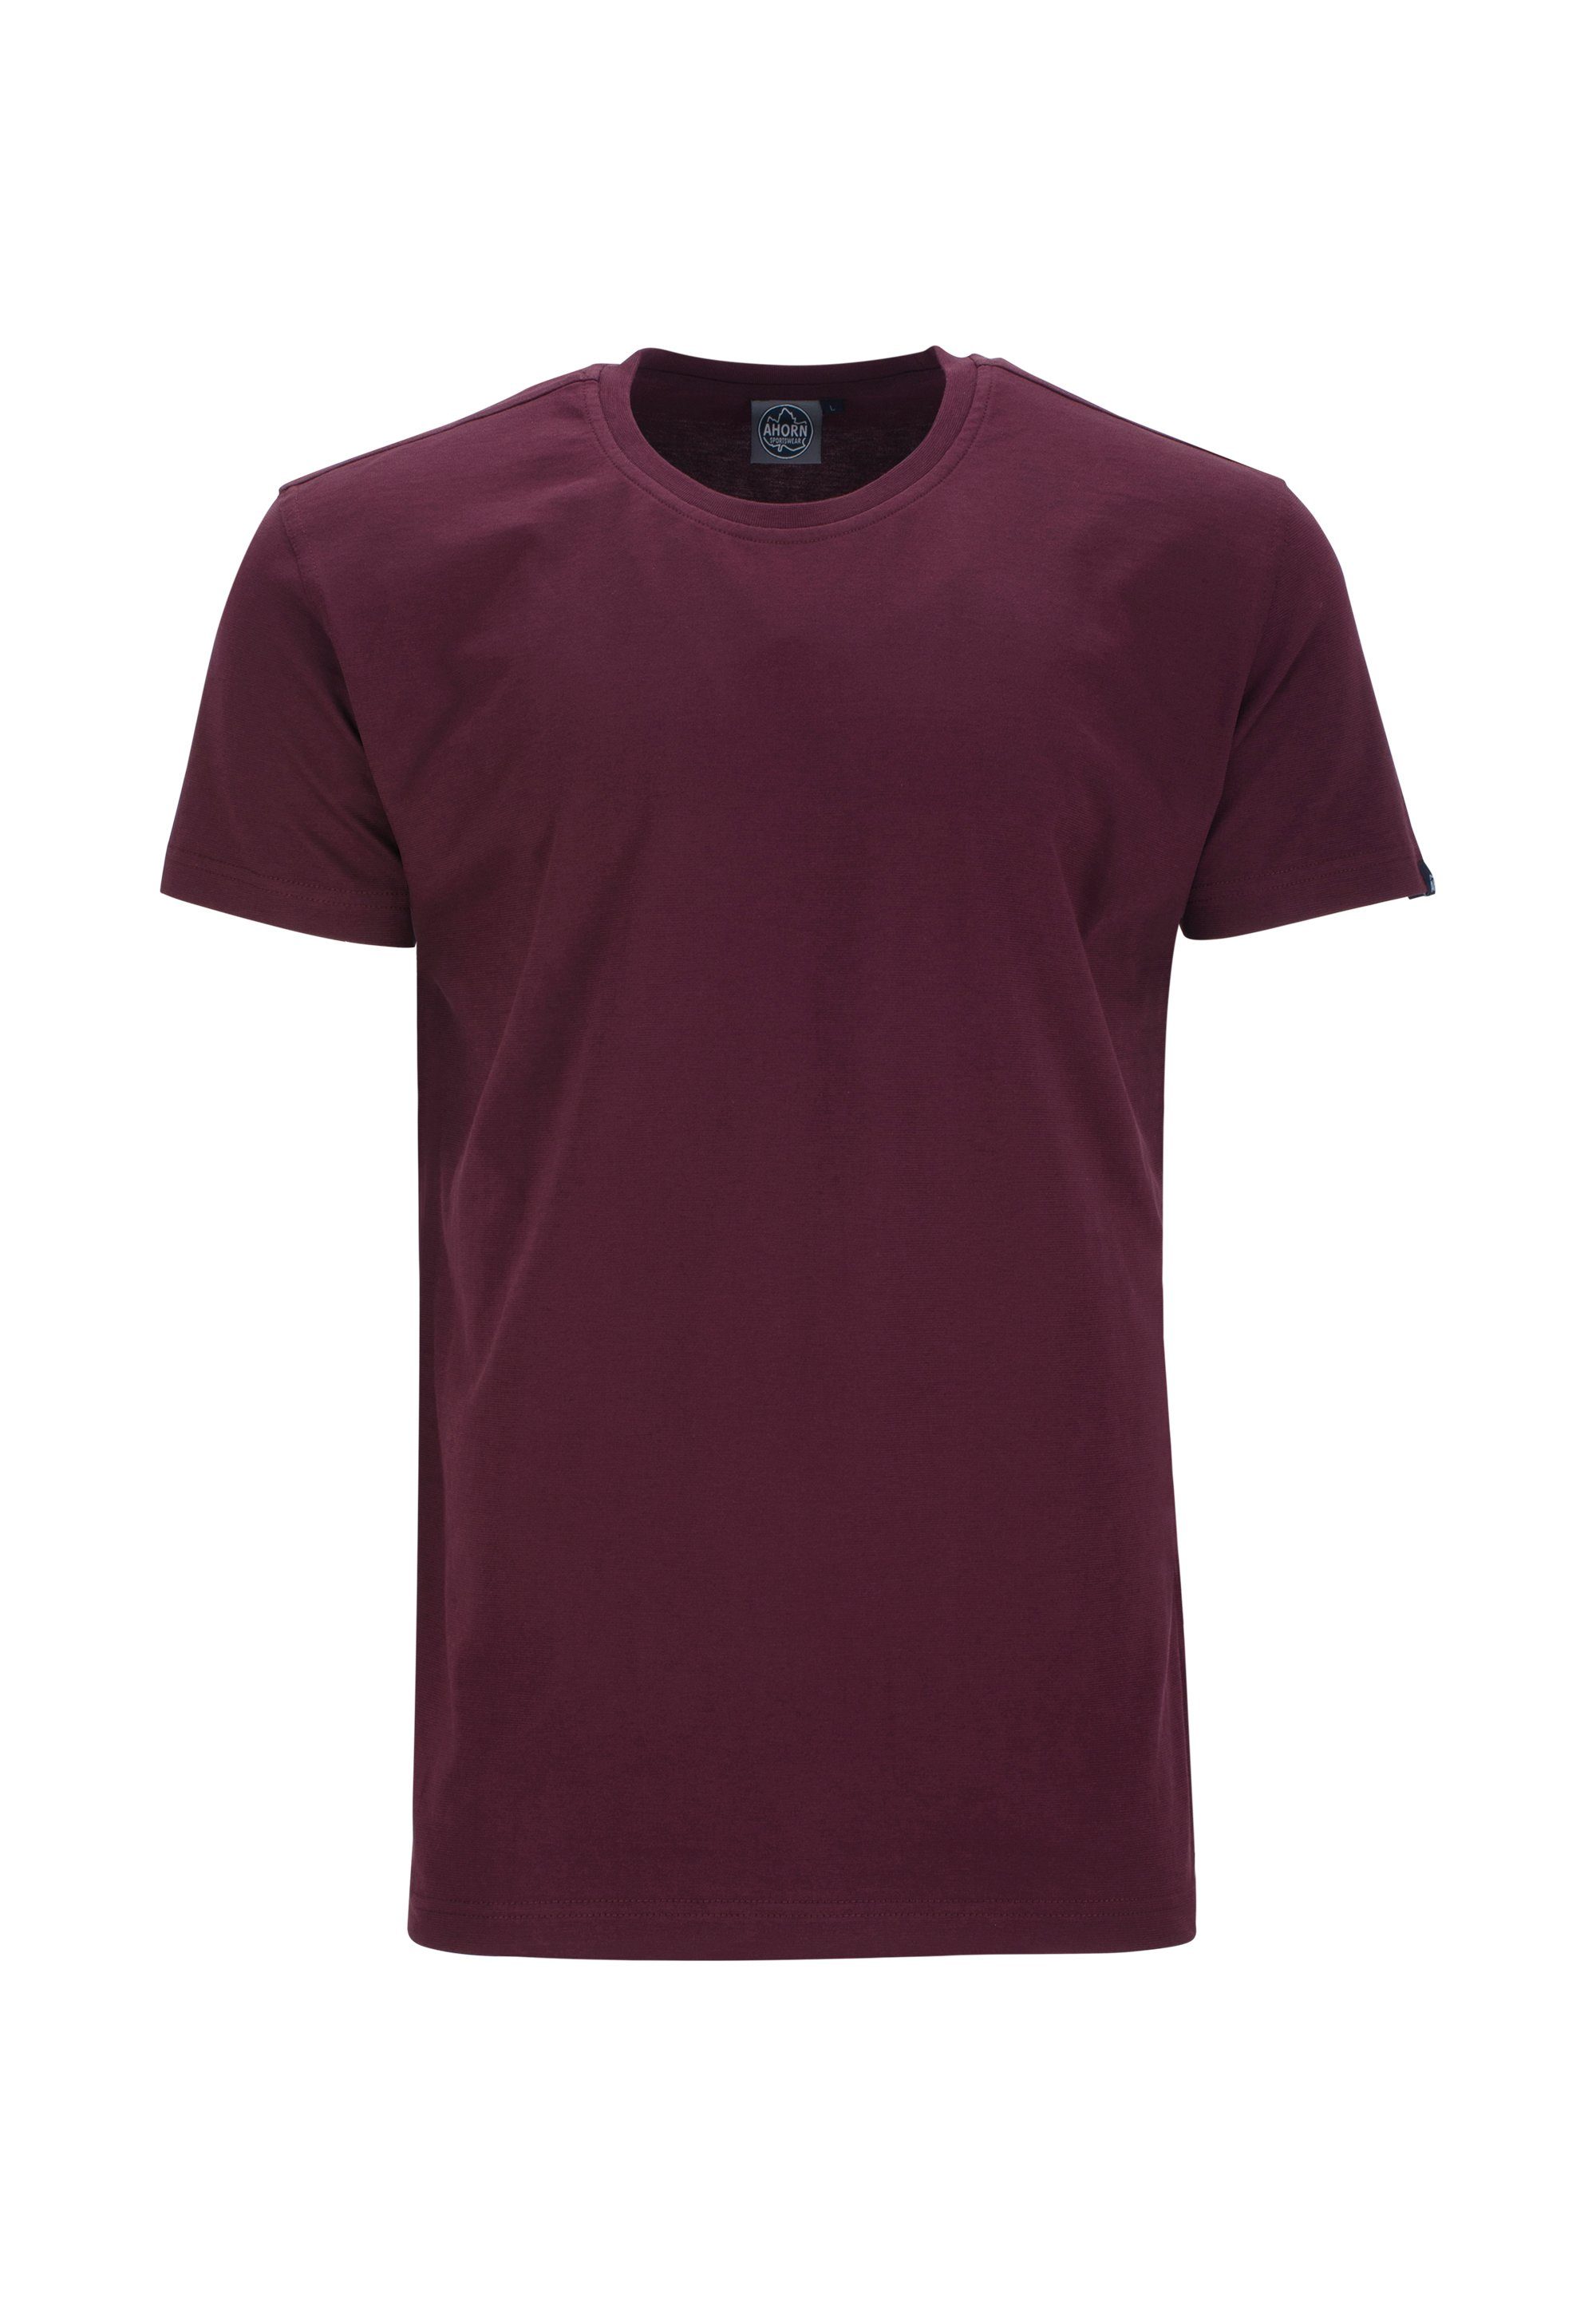 AHORN SPORTSWEAR T-Shirt im Basic-Look klassischen rot